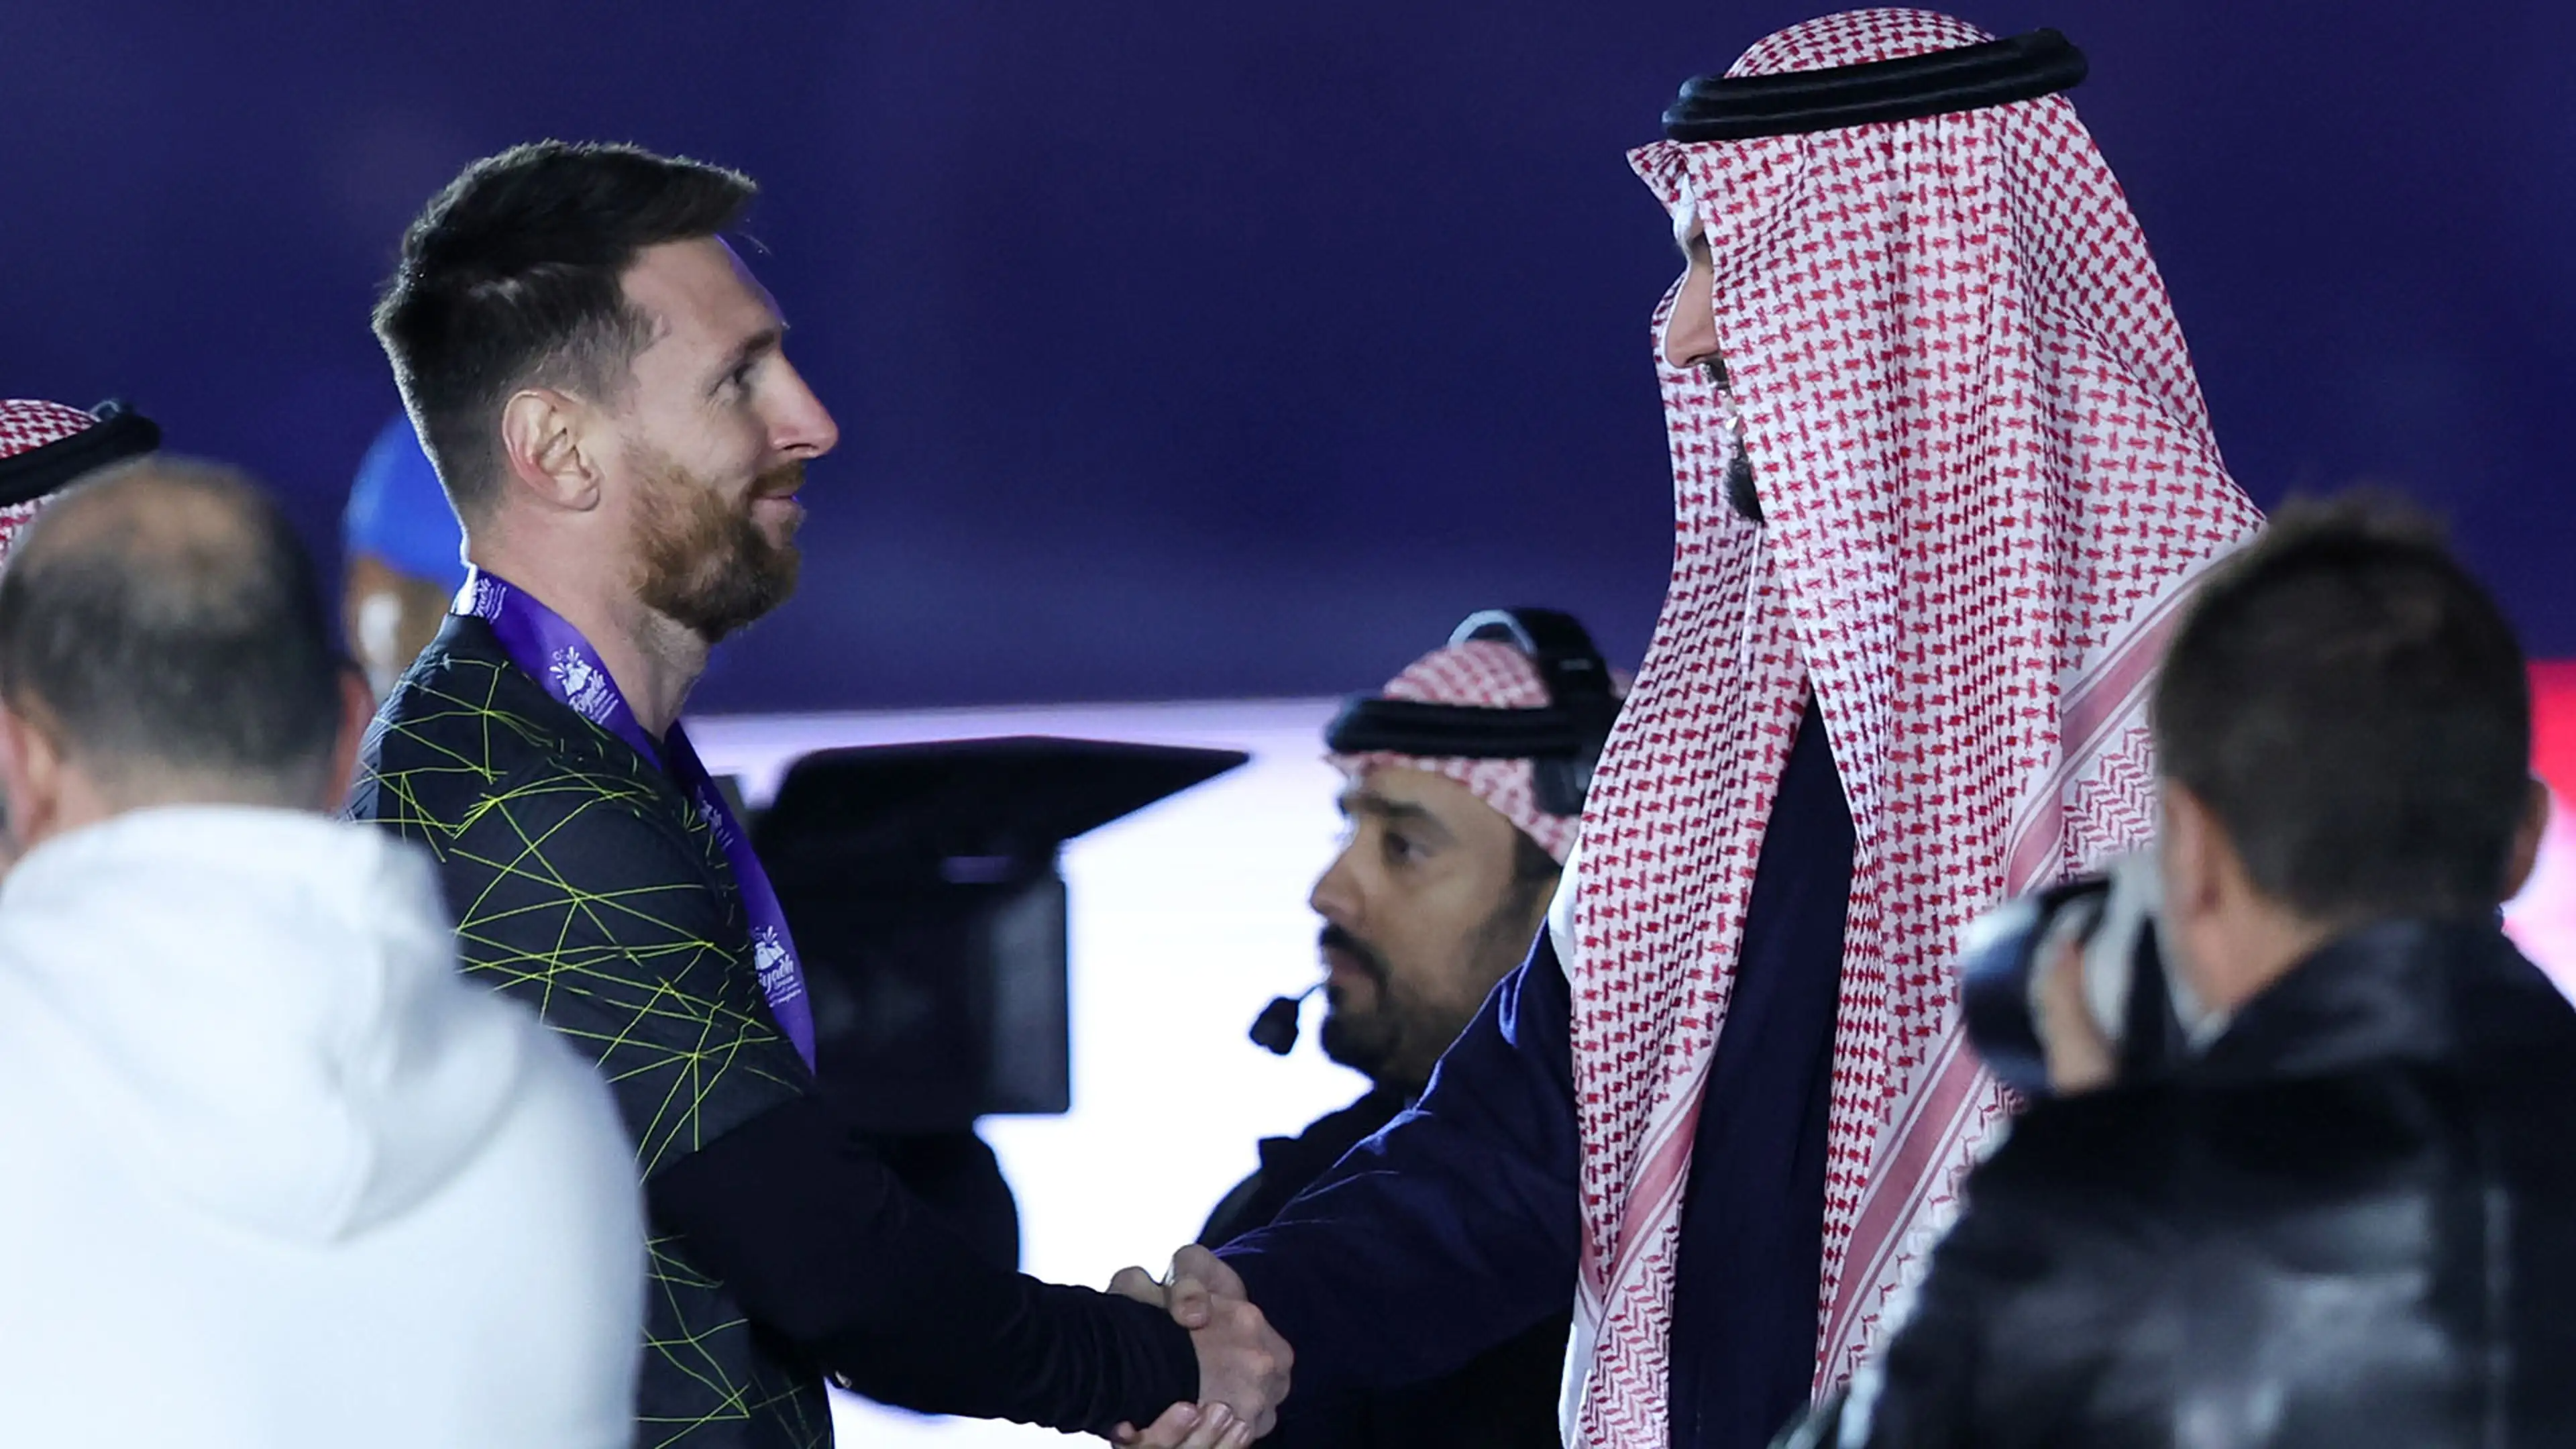 Messi may make up to $400 million per season at Saudi Arabian club